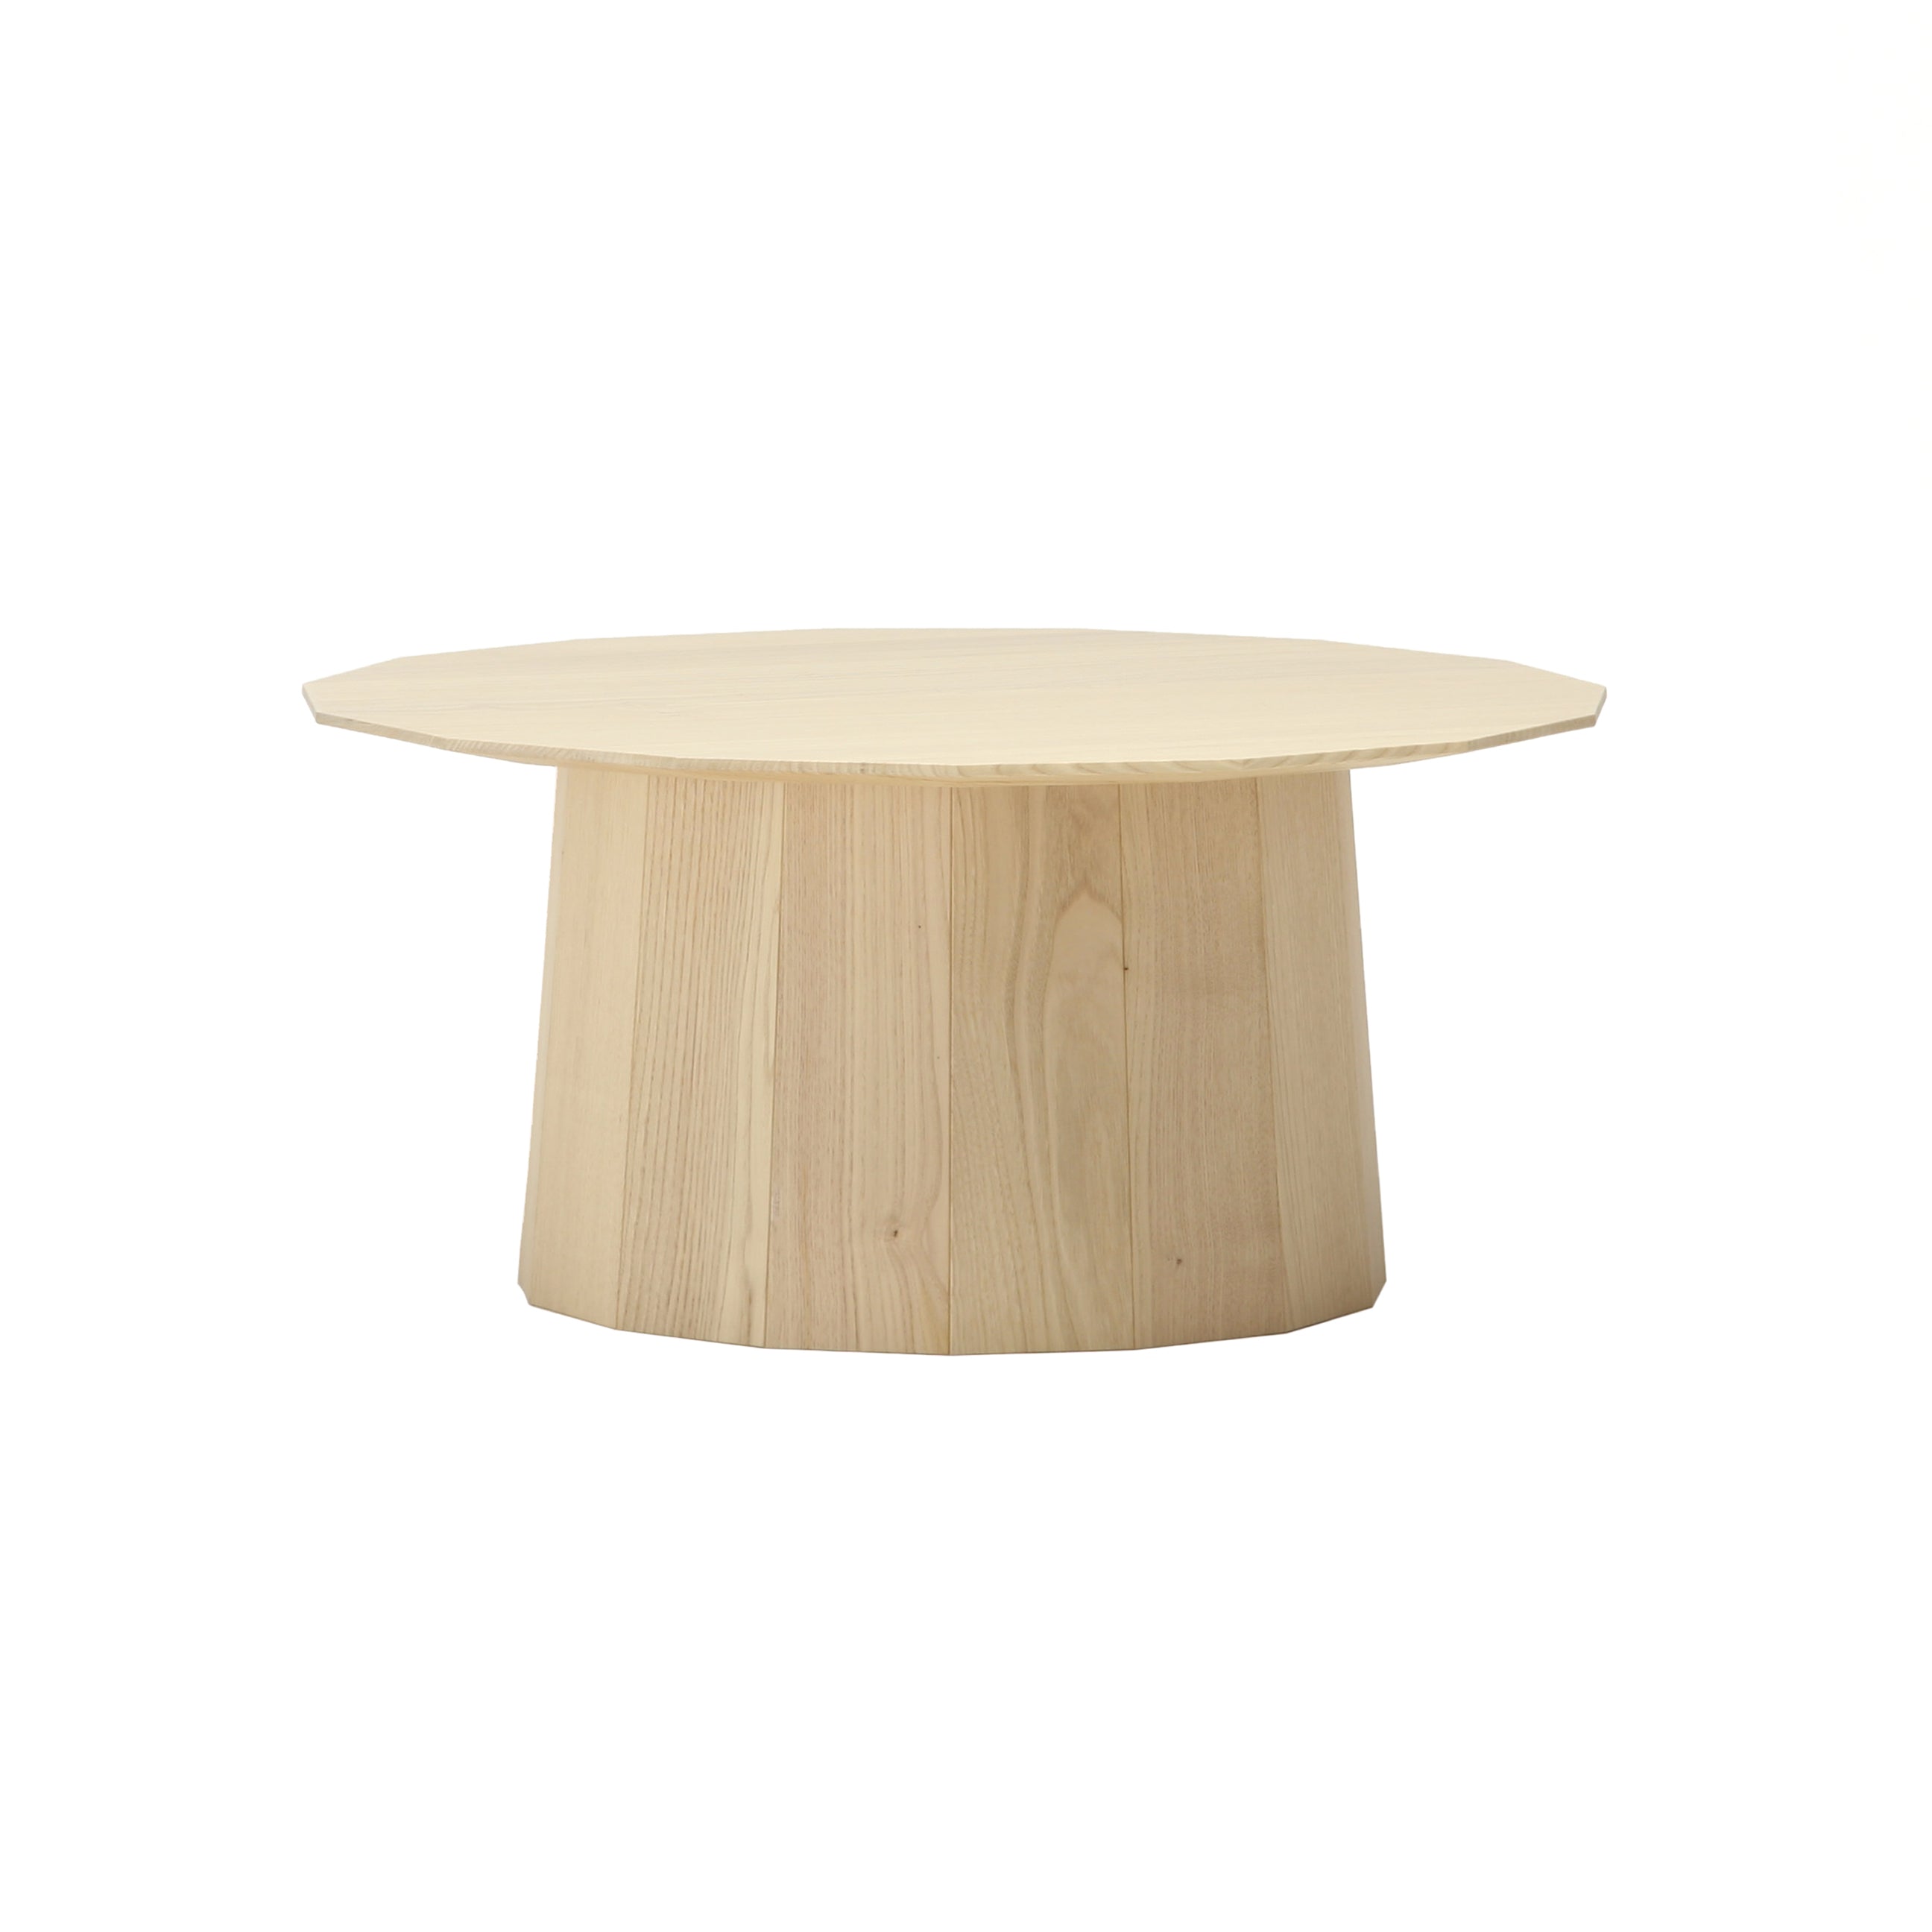 Colour Wood Plain Tables: Large - 28.2